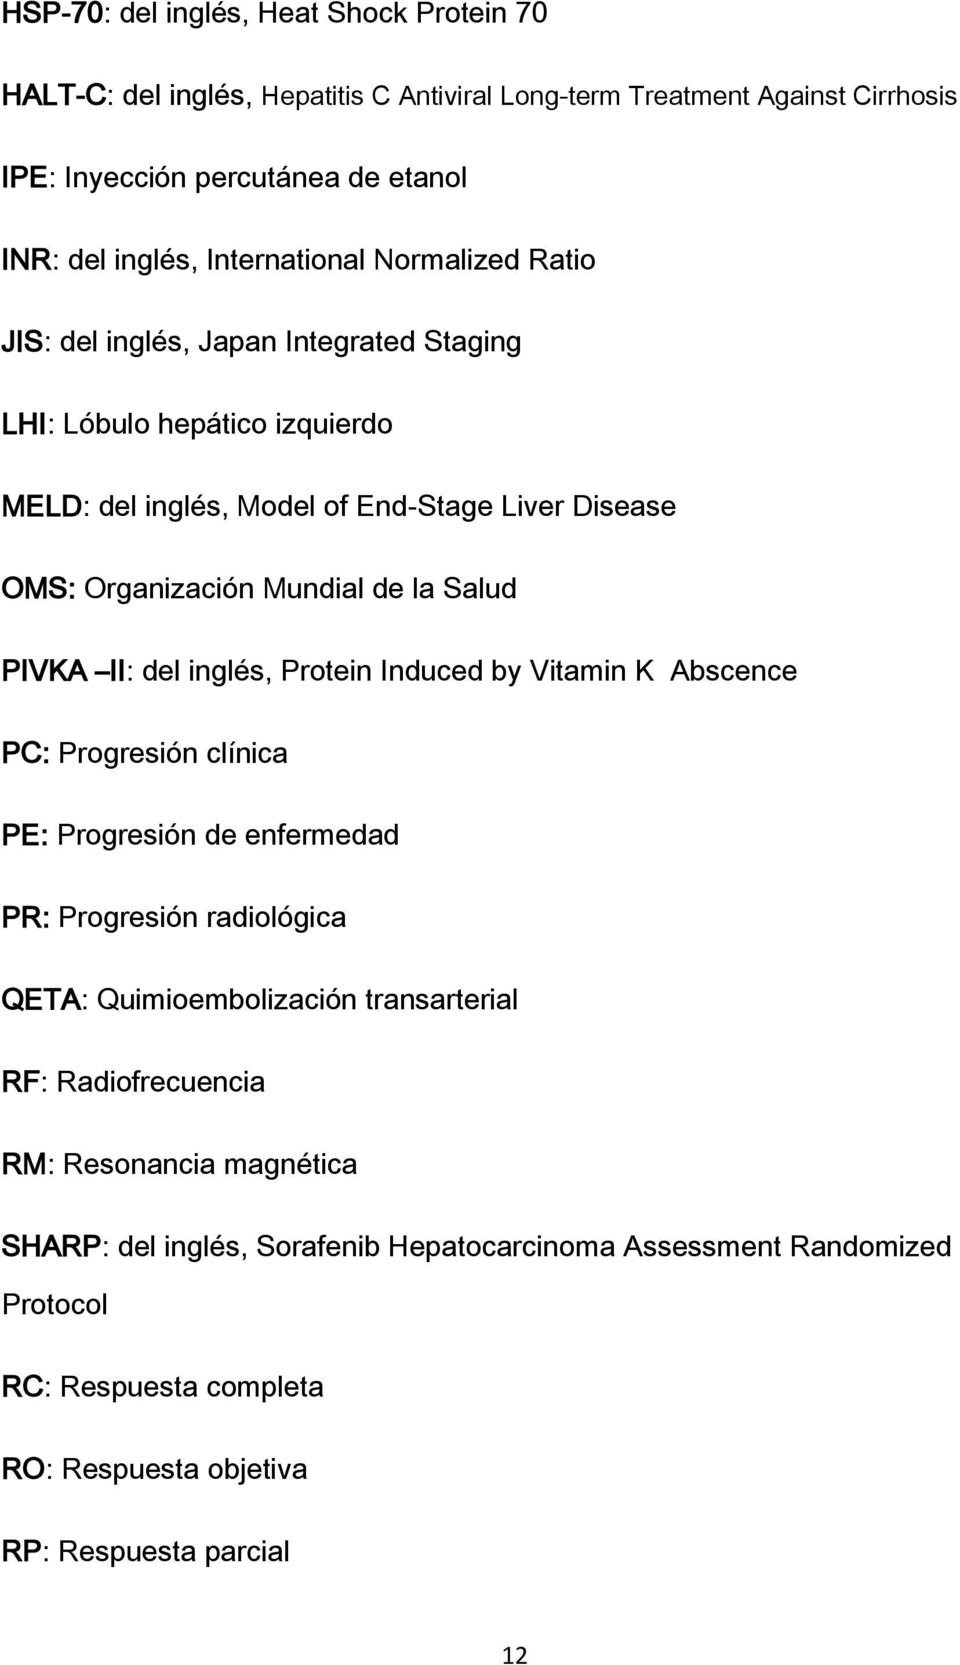 la Salud PIVKA II: del inglés, Protein Induced by Vitamin K Abscence PC: Progresión clínica PE: Progresión de enfermedad PR: Progresión radiológica QETA: Quimioembolización